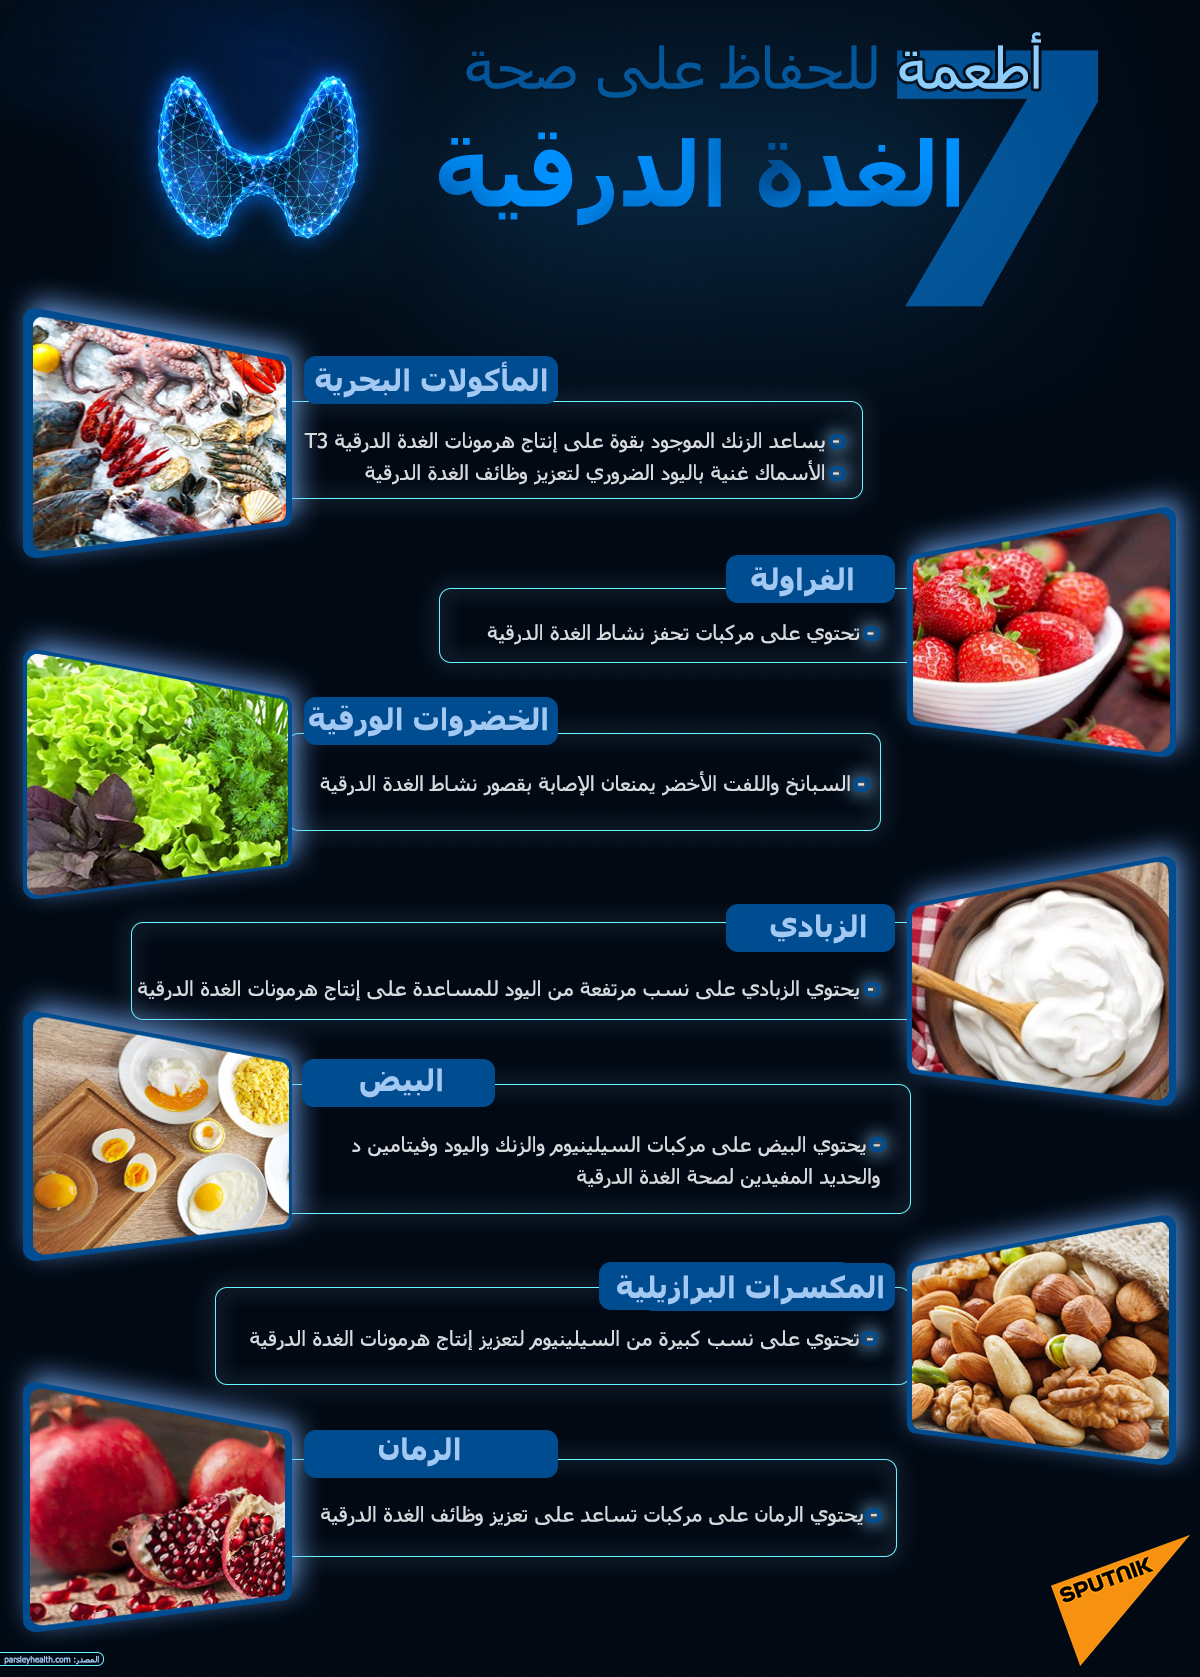 7 أطعمة للحفاظ على صحة الغدة الدرقية - سبوتنيك عربي